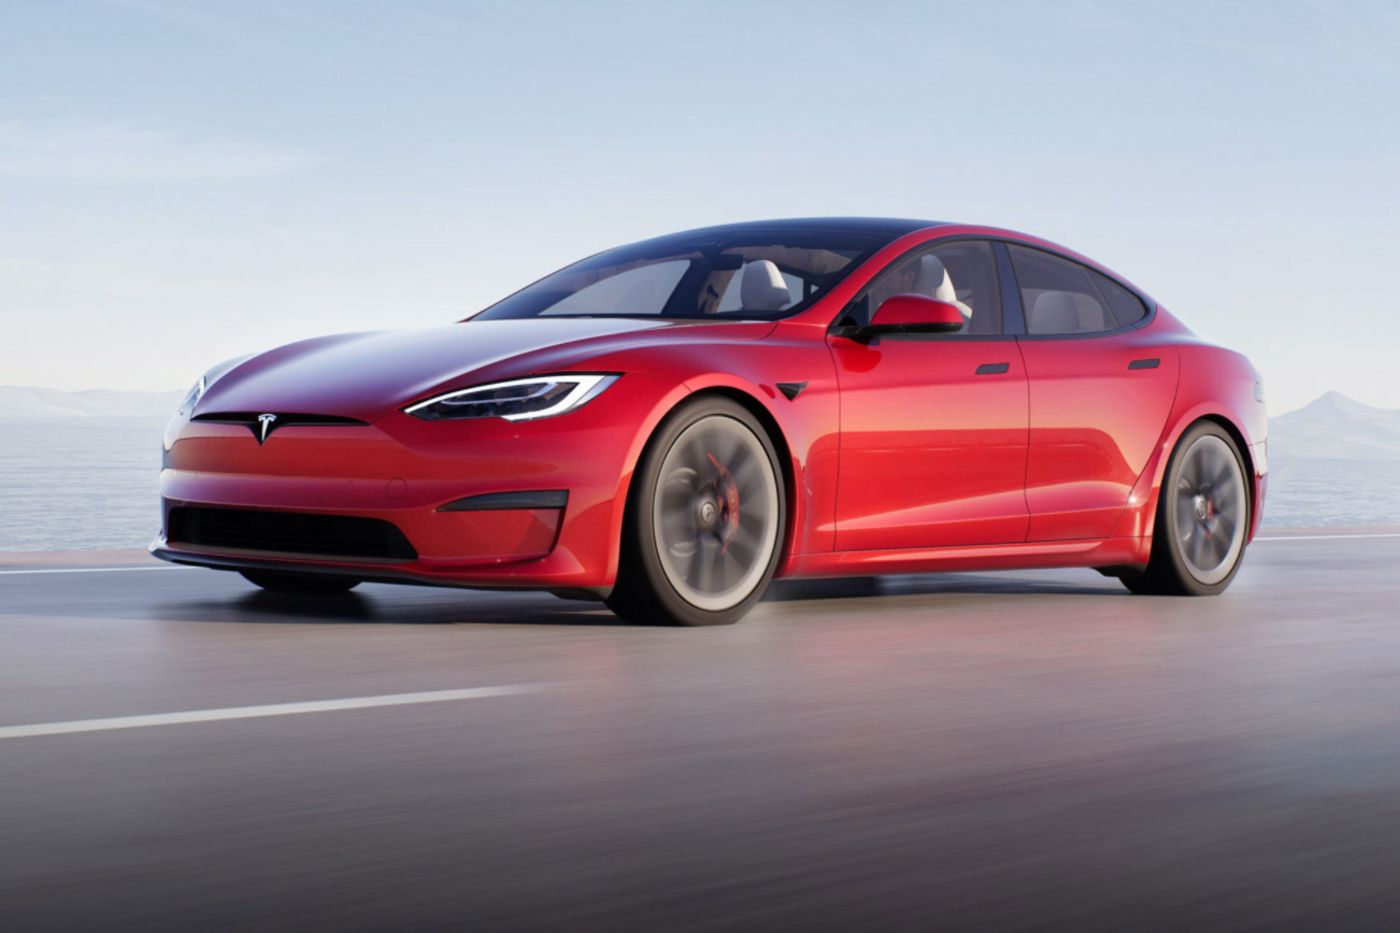 Tesla ชี้ระบบขับเคลื่อน "Plaid" สามารถเร่งความเร็วได้เร็วที่สุดในโลก